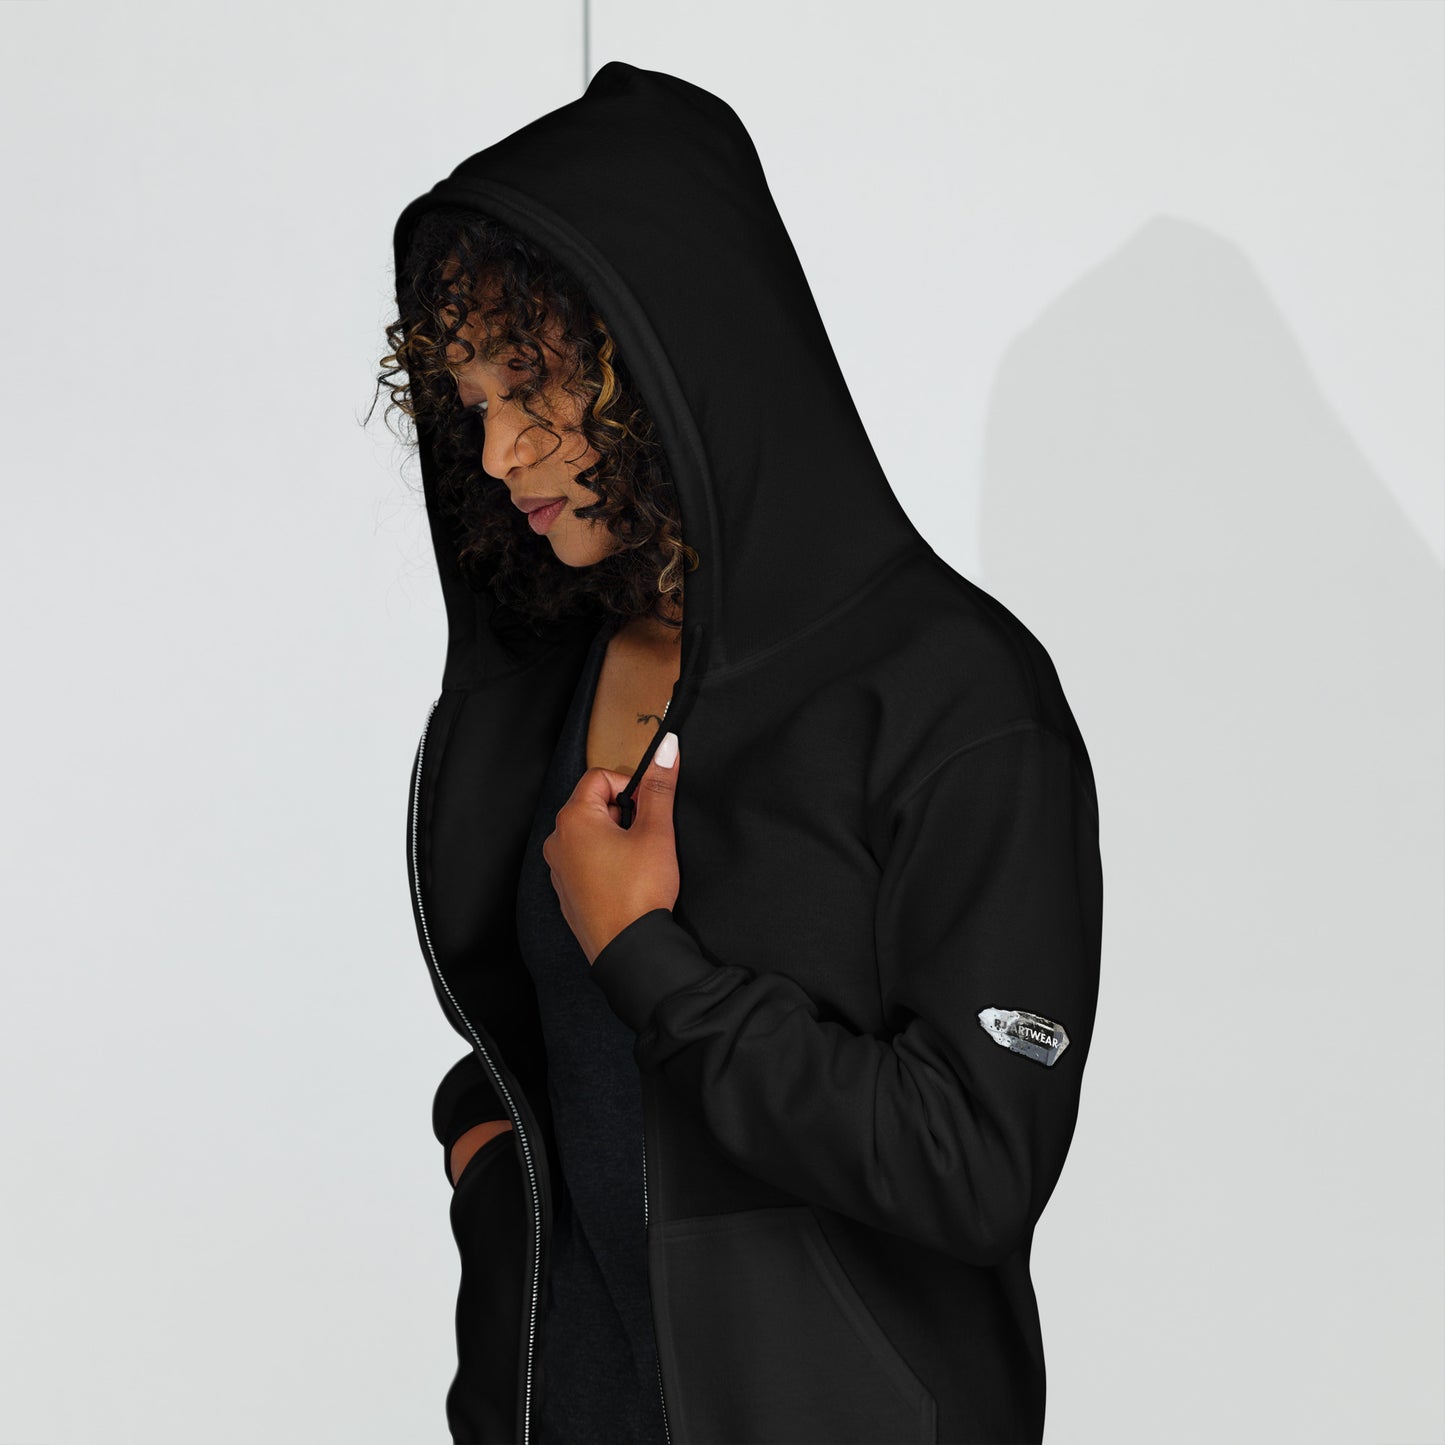 Crystal Mountain - Unisex heavy blend zip hoodie